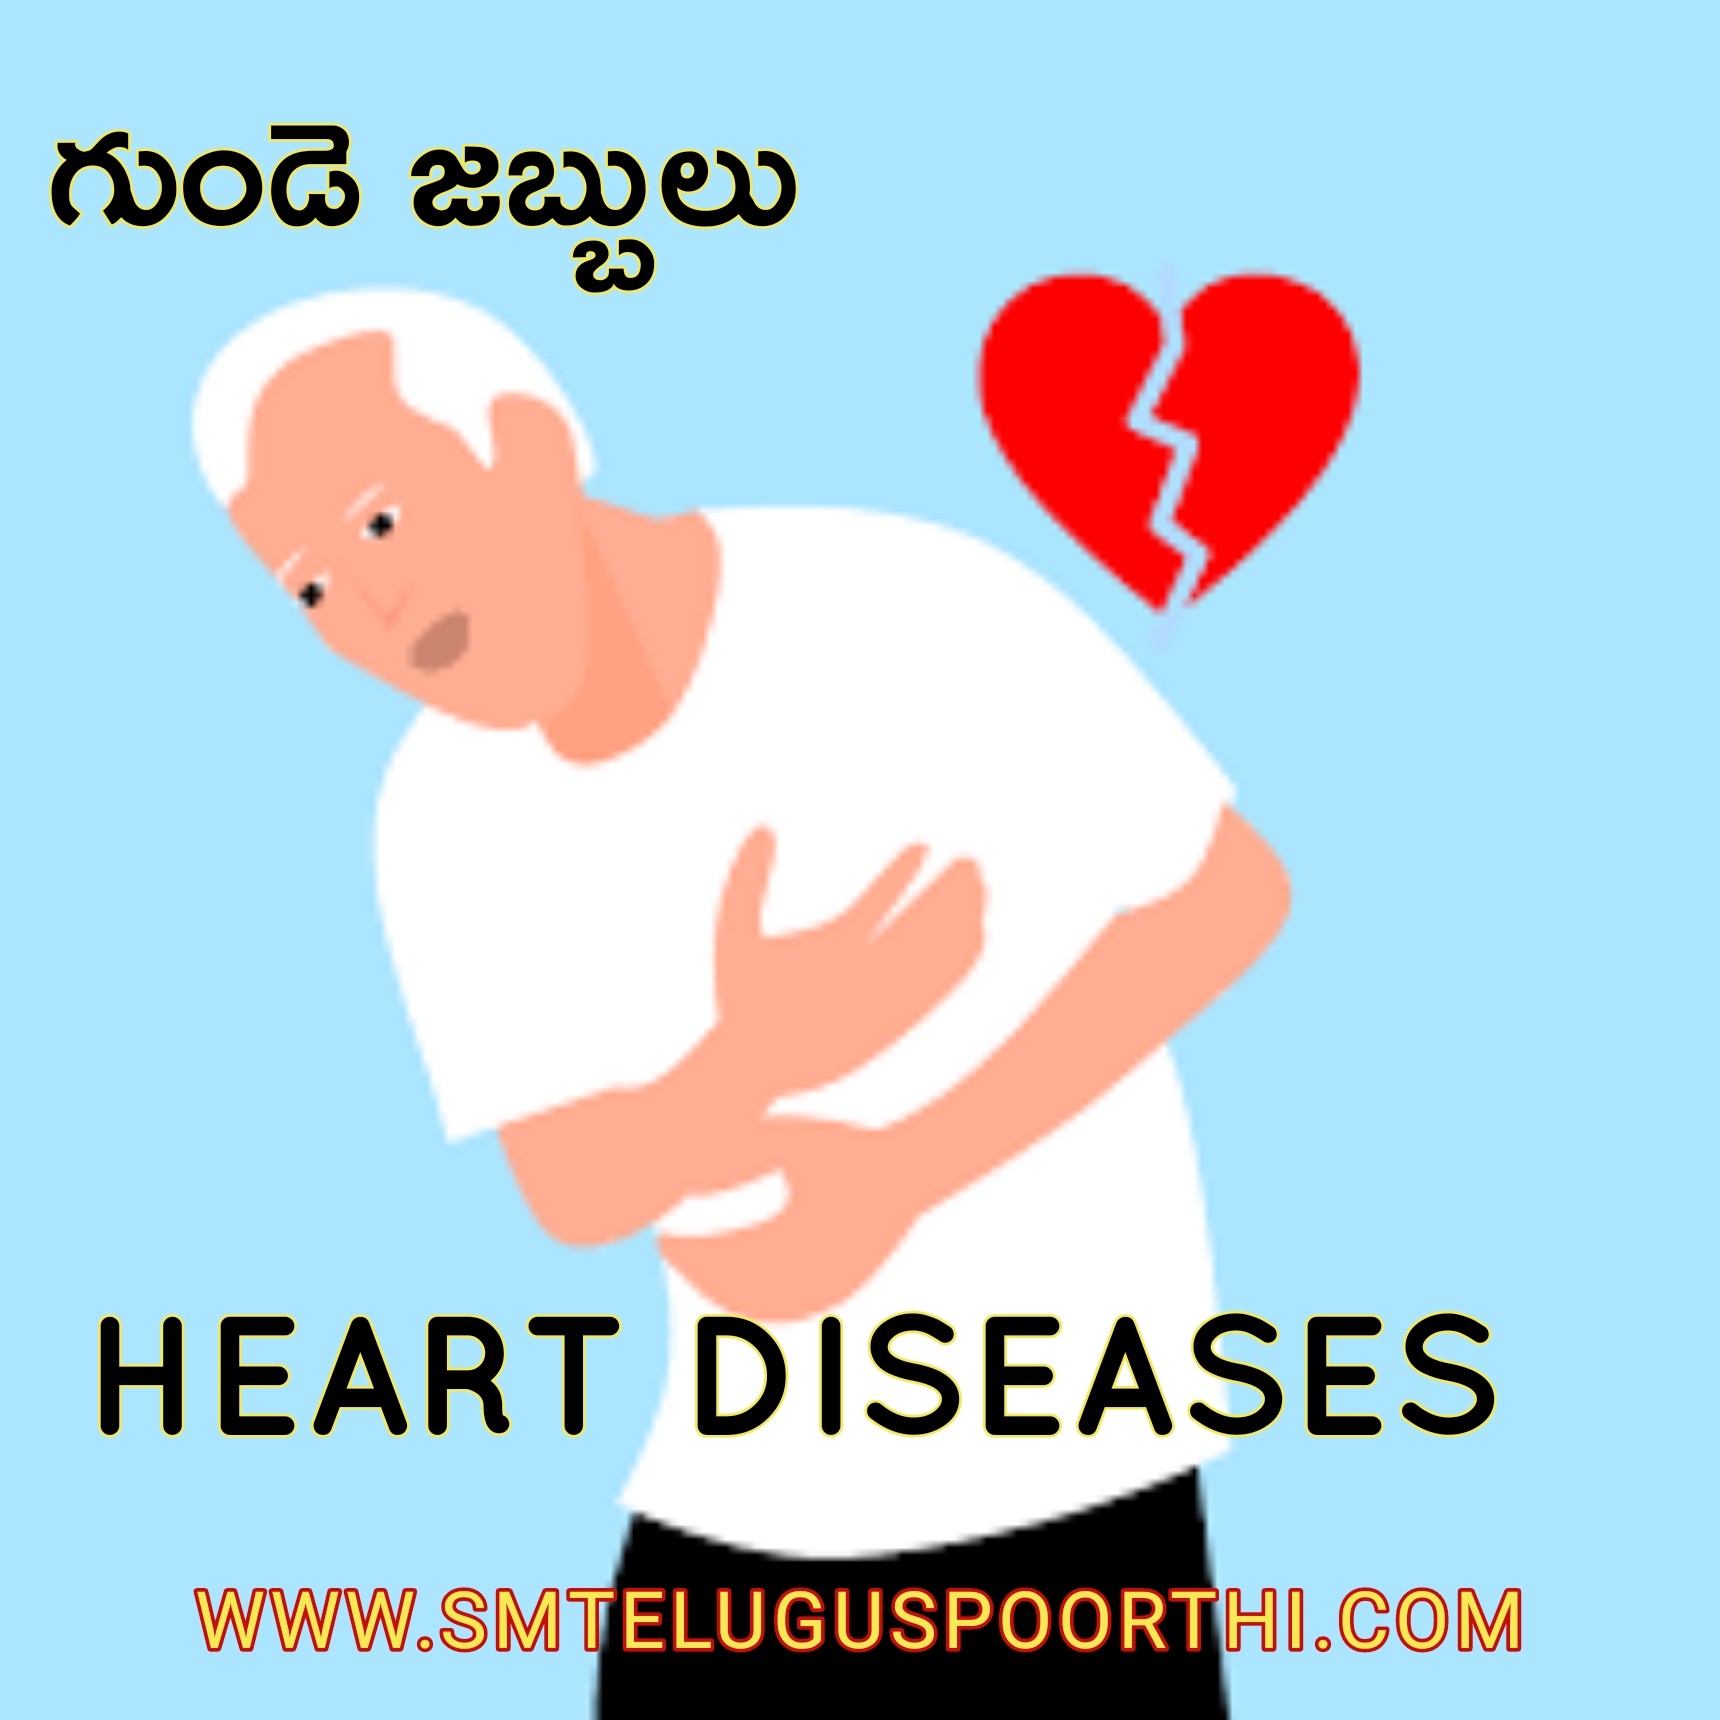 HEART DISEASES IN TELUGU